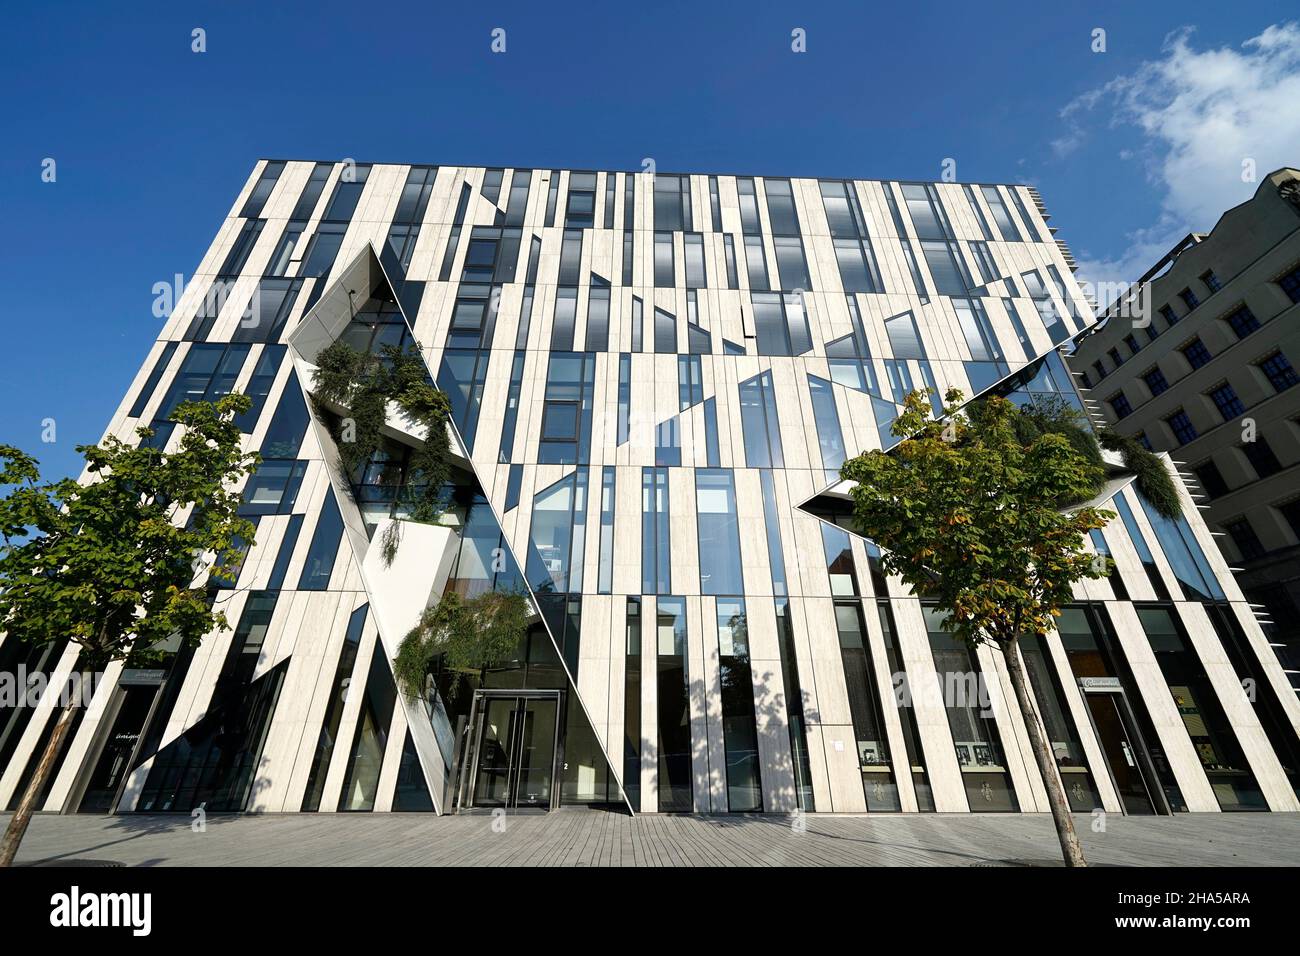 alemania,renania del norte-westfalia,düsseldorf,königsallee,kö-bogen,moderno edificio de oficinas futurista,plantas de fachada verde Foto de stock